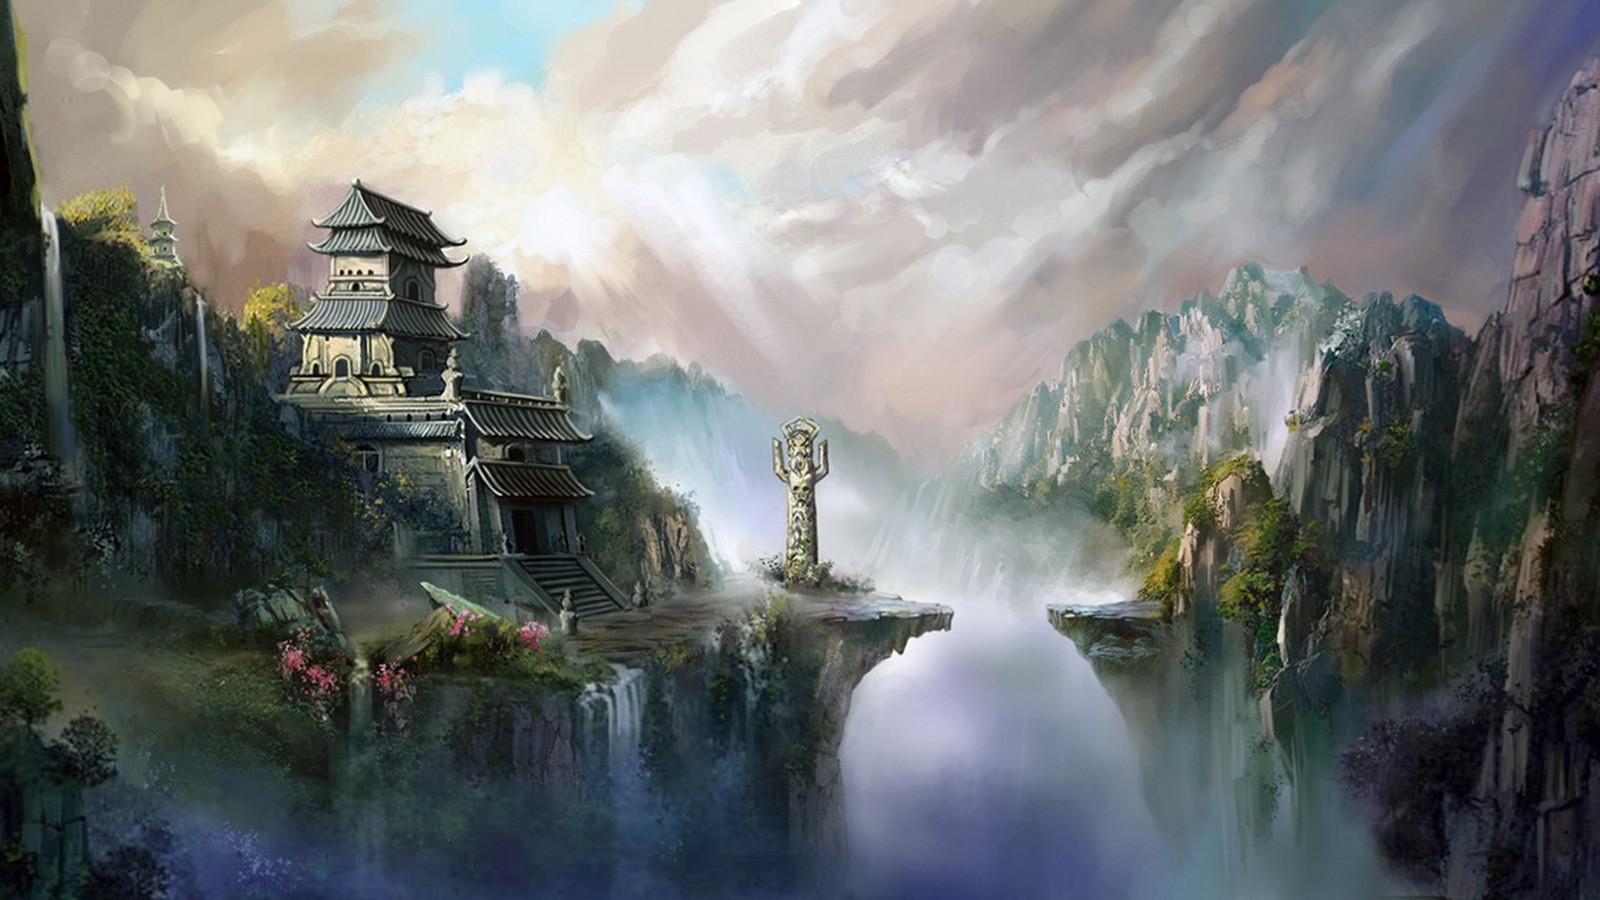 Fantasy Castle Picture